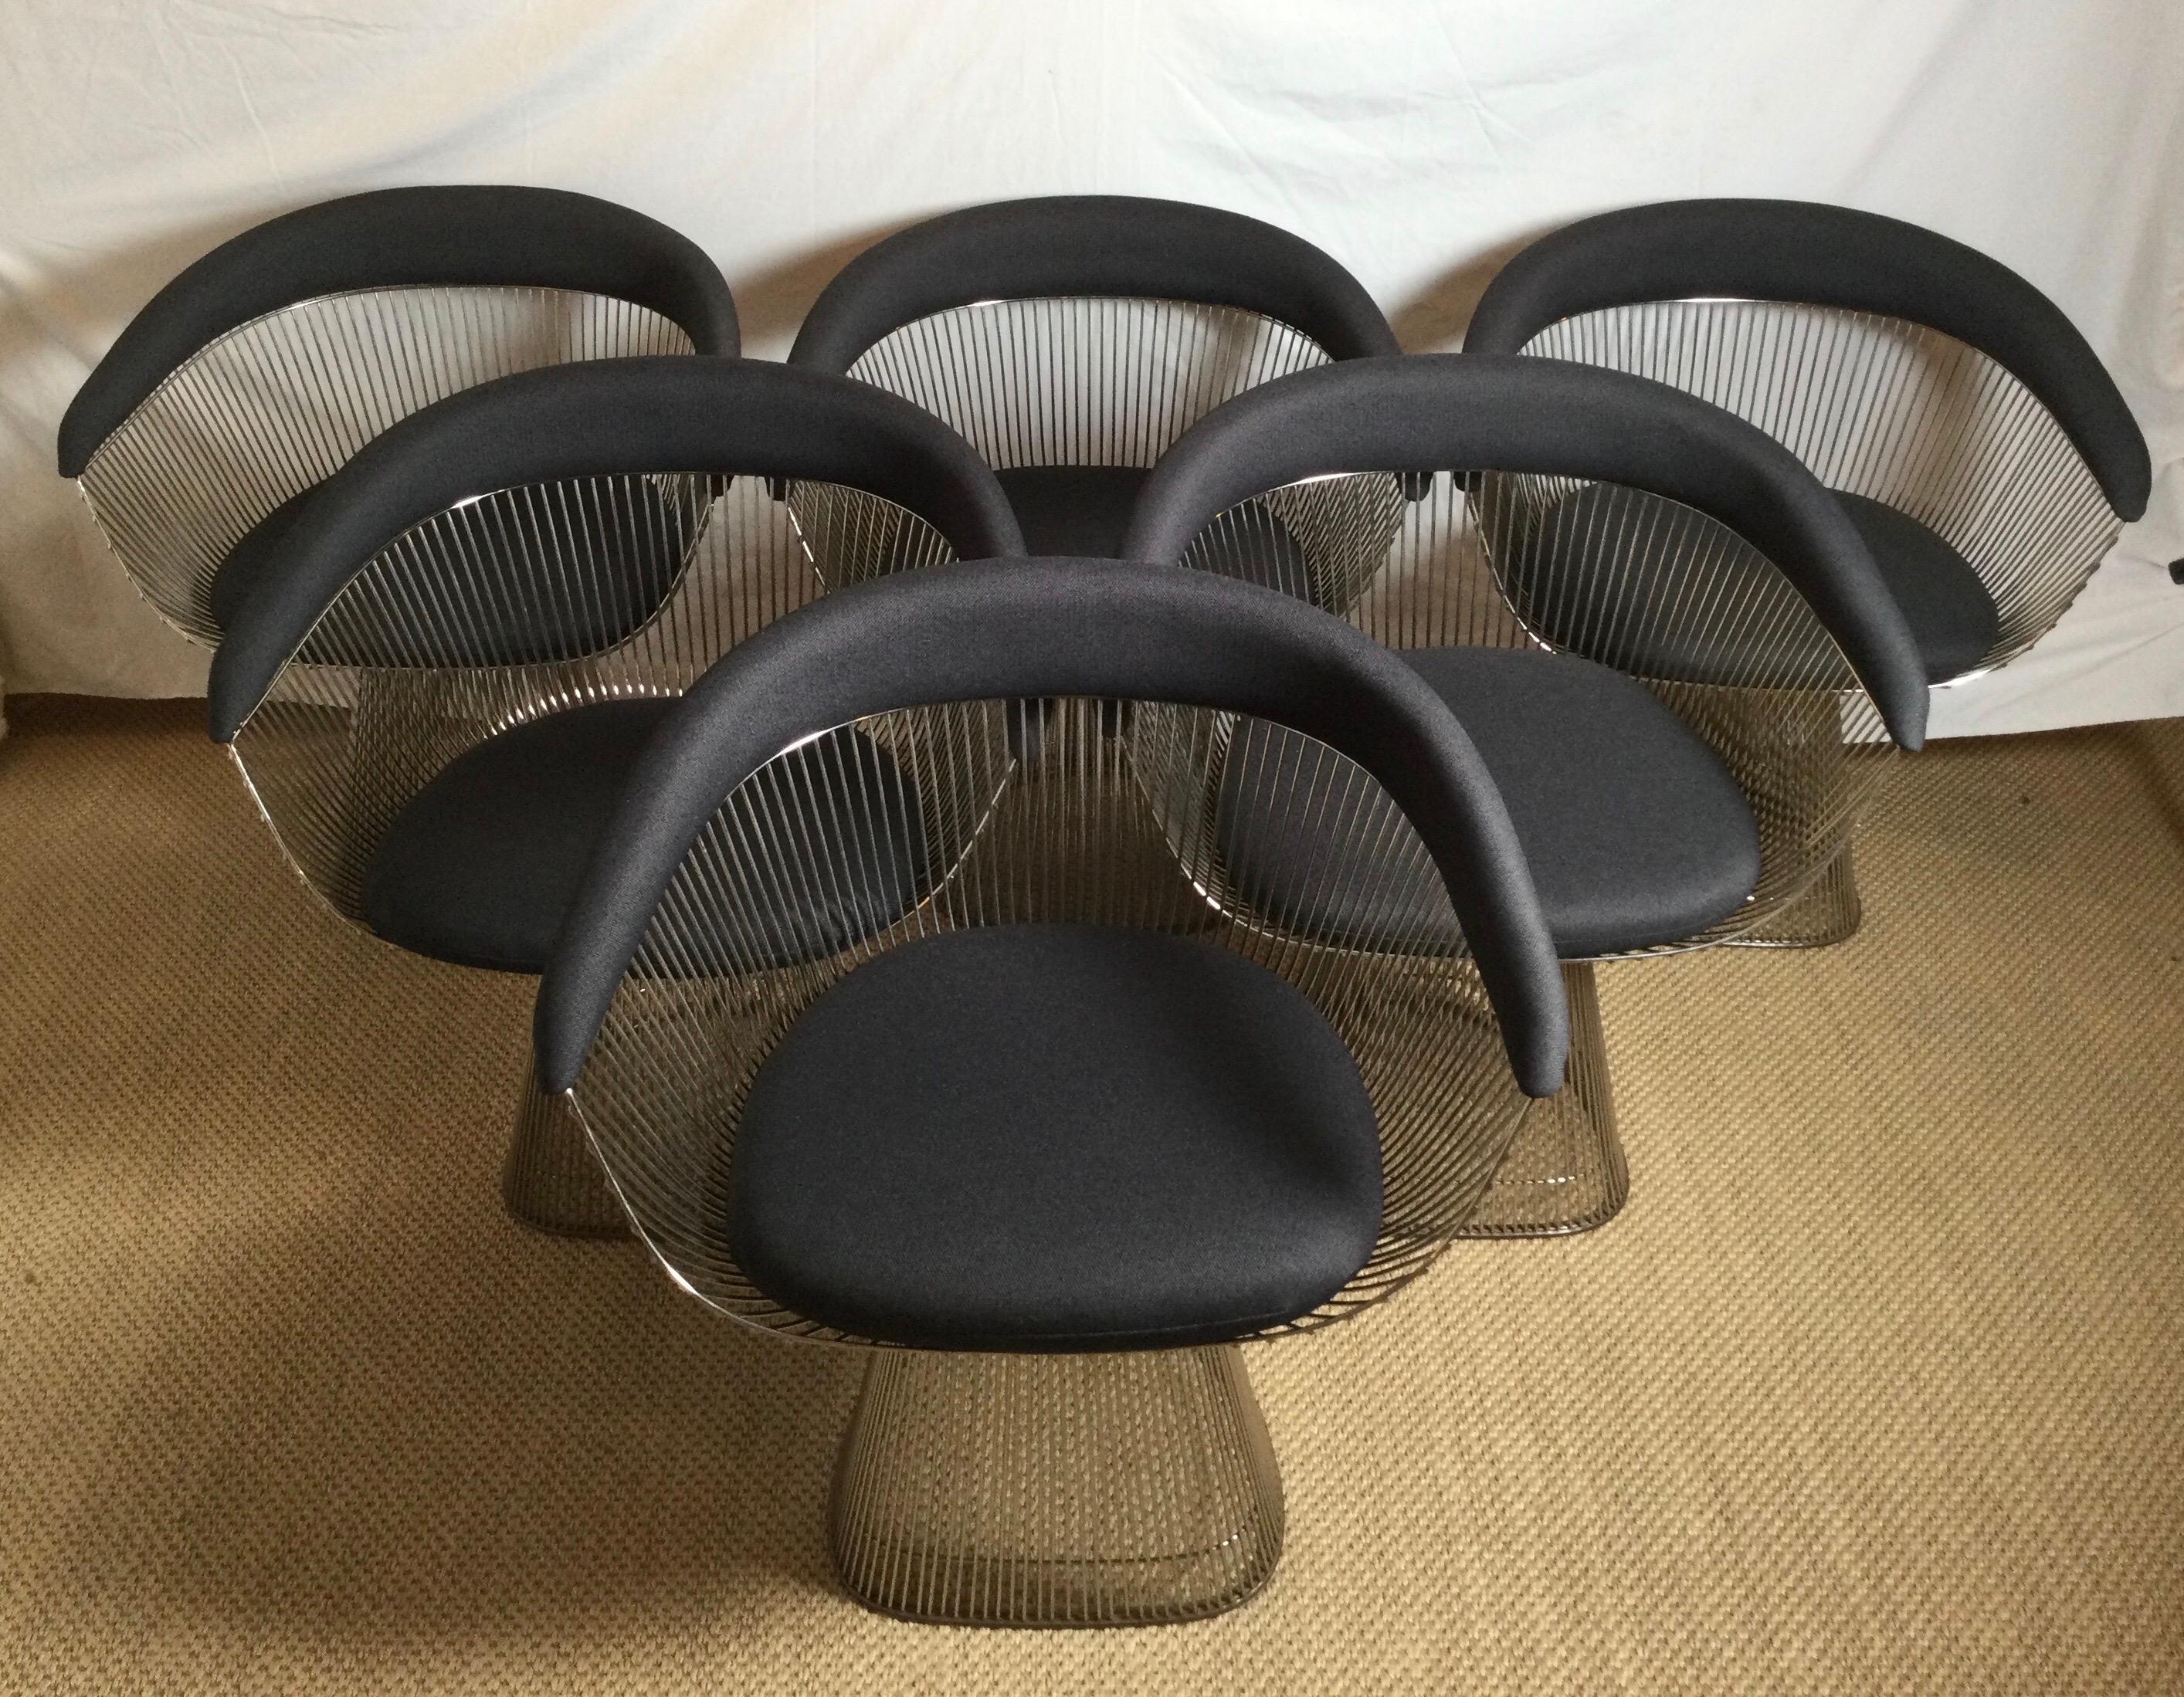 Un exemple étonnant de la chaise à bras Warren Platner de 1966 pour Knoll. Ces chaises sont intemporelles et s'intègrent magnifiquement à de nombreux styles de tables. Les canapés sont parfaitement adaptés aux repas, car ils sont extrêmement